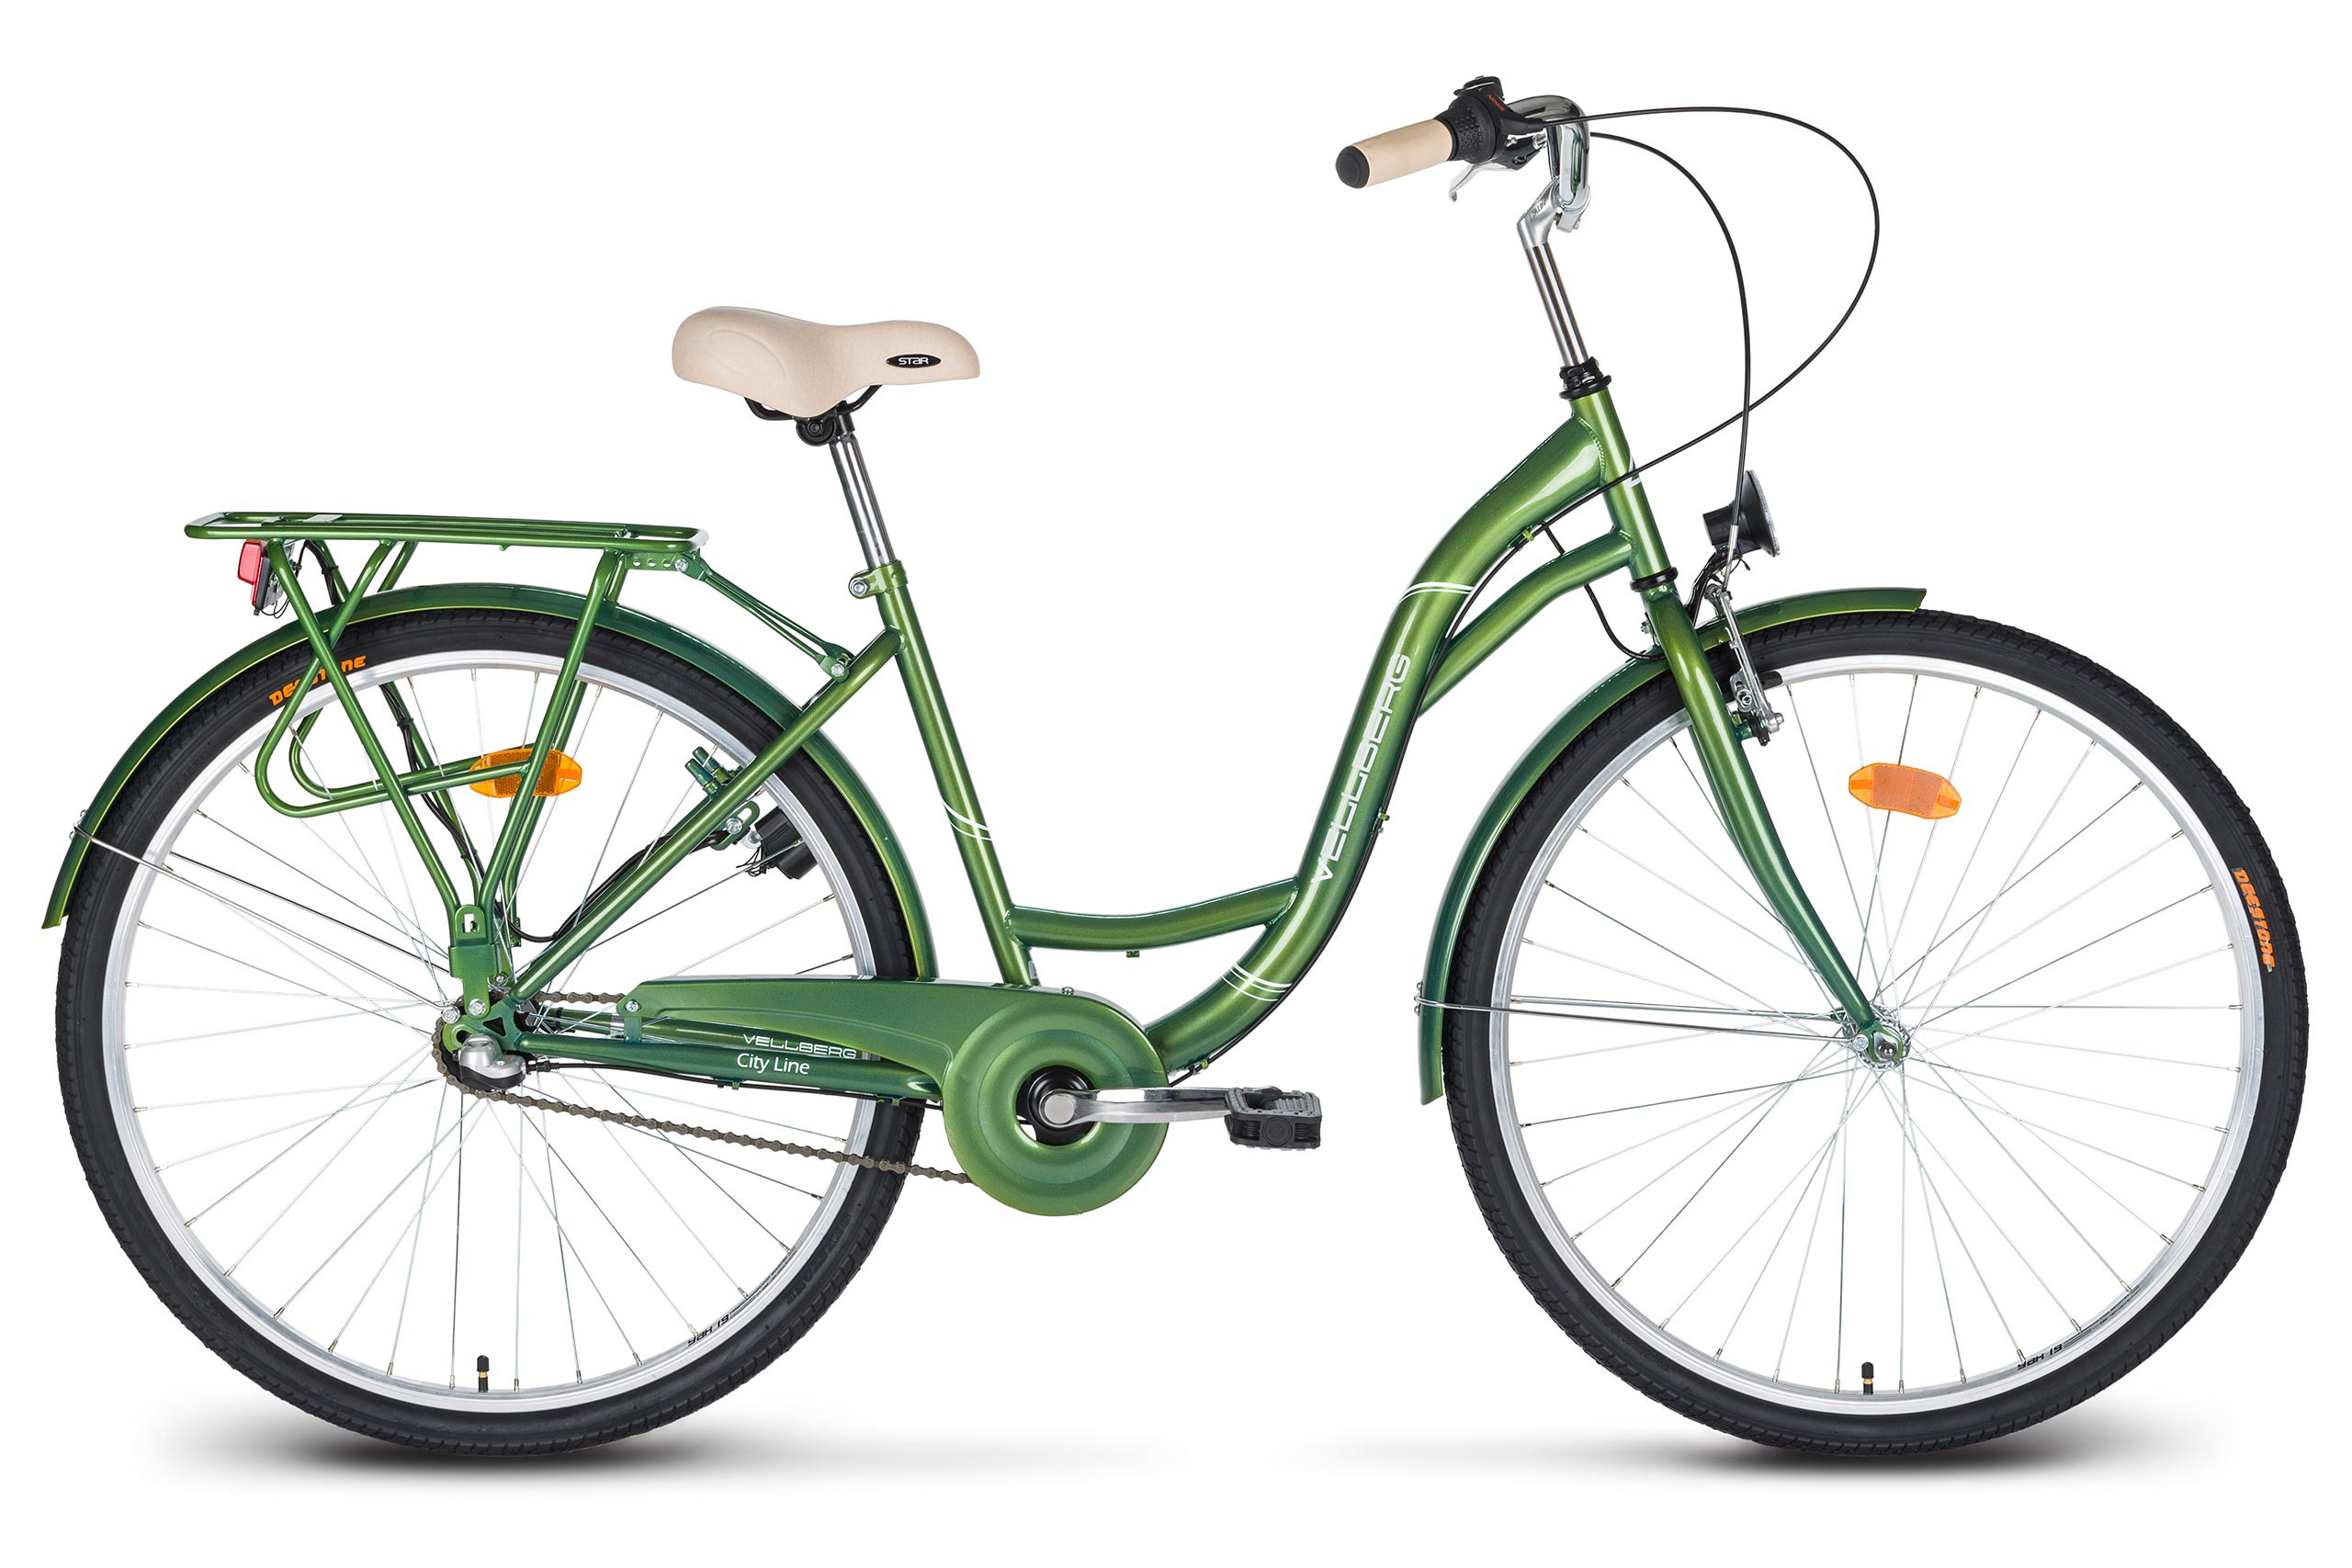 Купить велосипед москва московская область. Altair City line 28. Altair City 28 зеленый серый. Городской велосипед Аист ck9-344. Городской велосипед с планетарной втулкой.